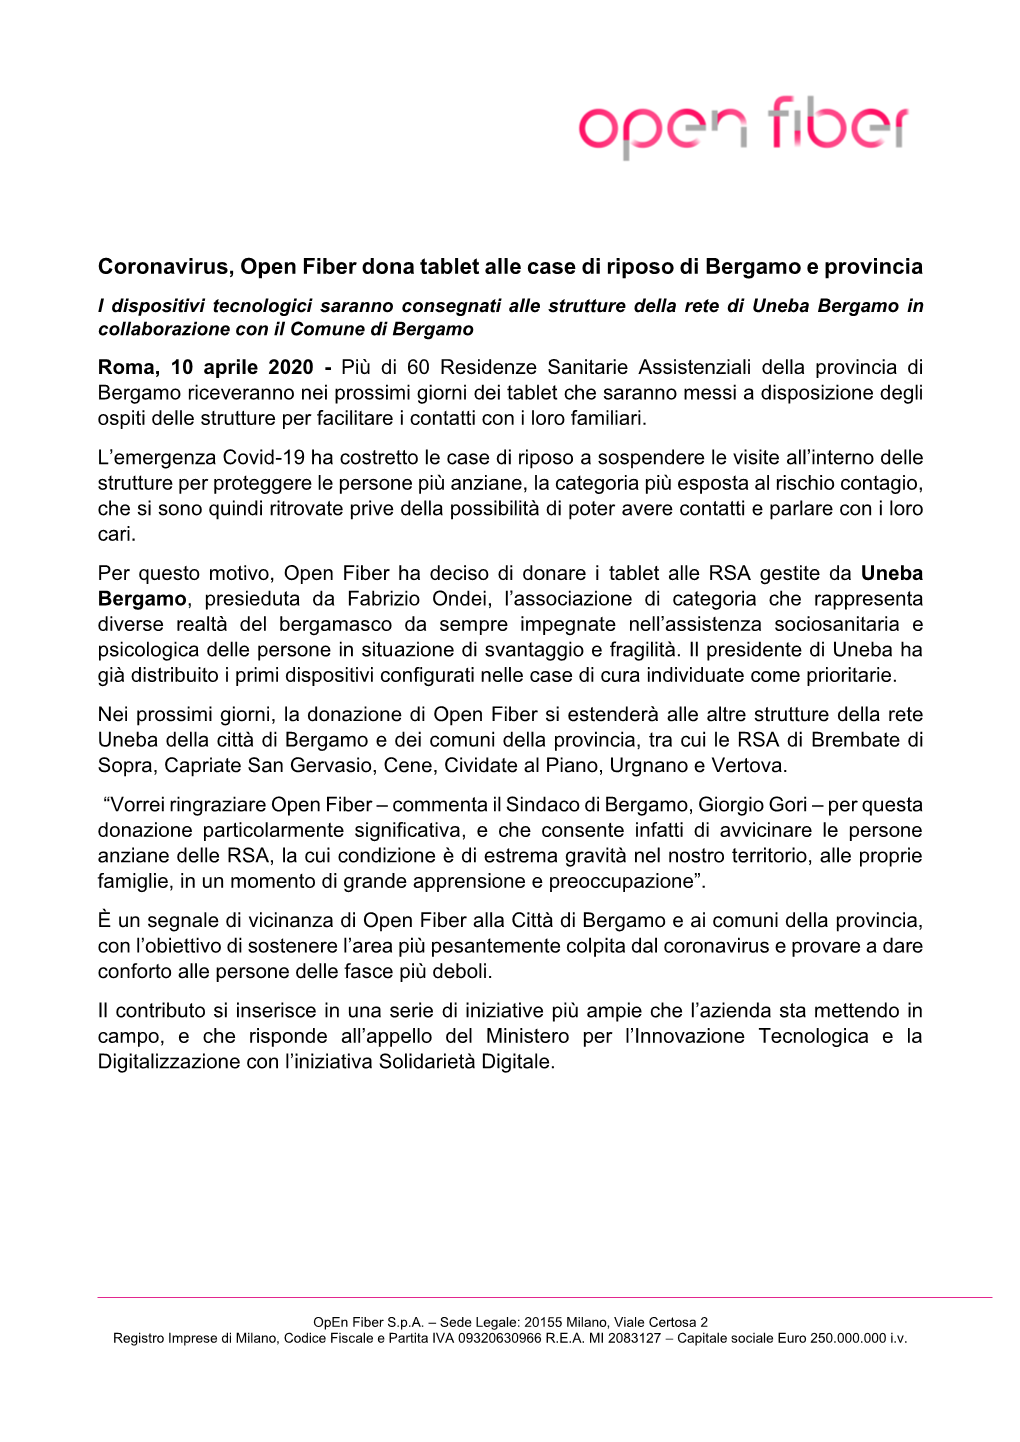 Coronavirus, Open Fiber Dona Tablet Alle Case Di Riposo Di Bergamo E